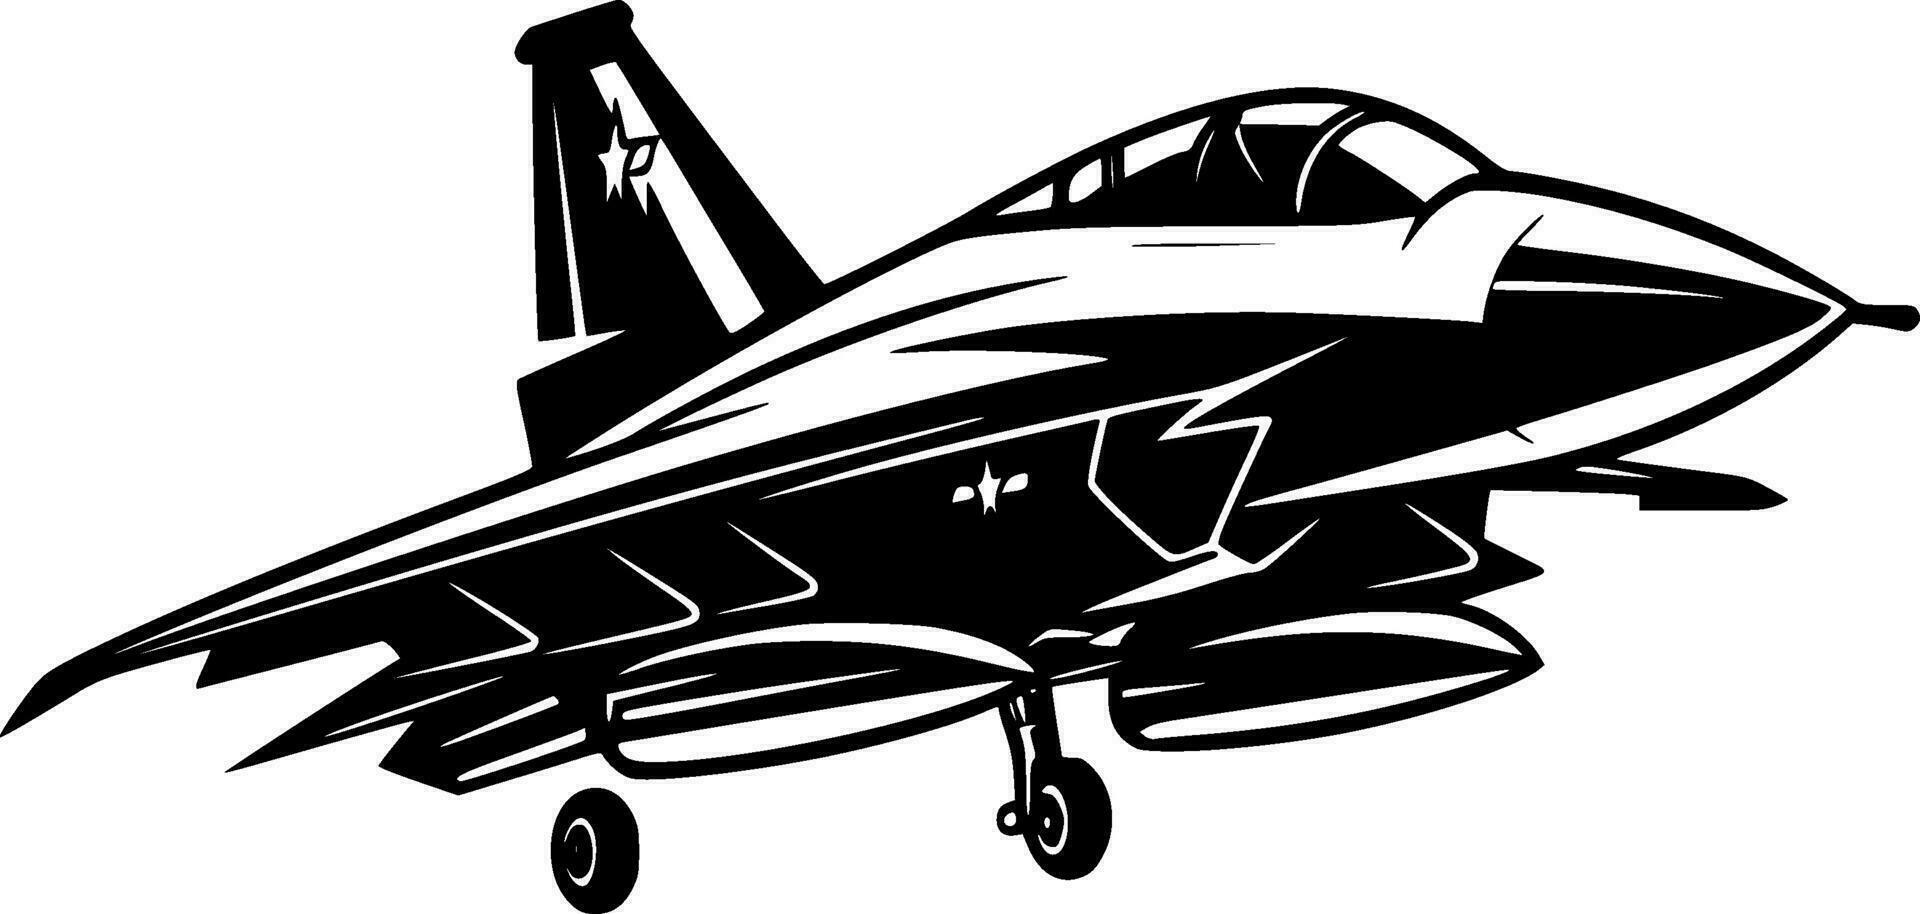 kämpe jet, svart och vit vektor illustration